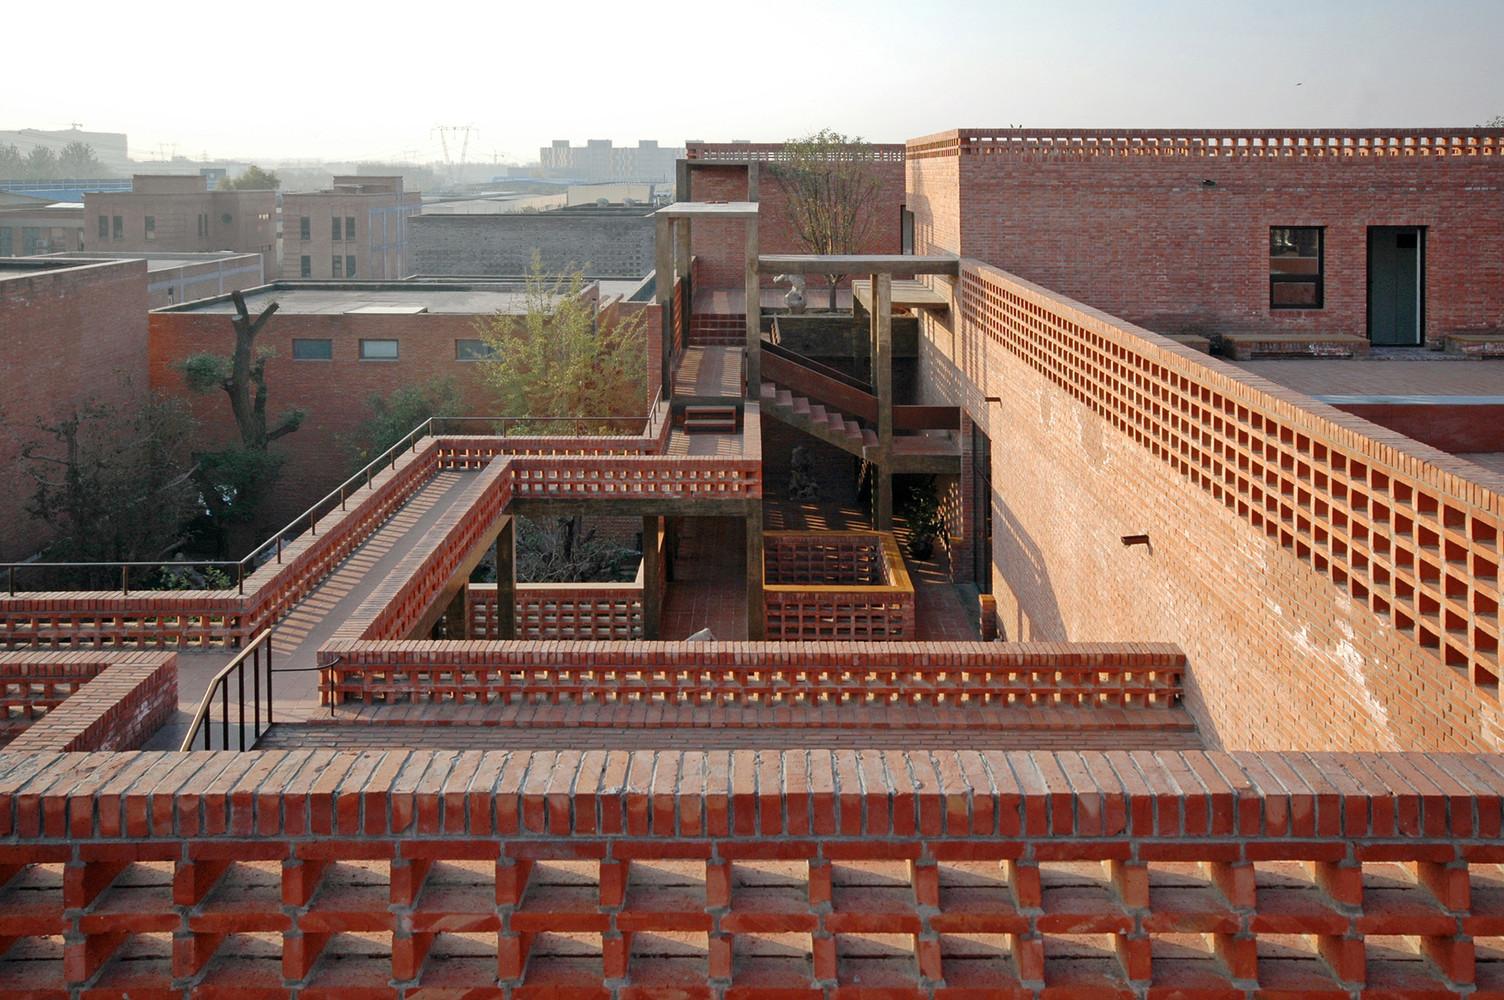 【北京磚砌建築】參考中國庭院概念 採用通風山形設計